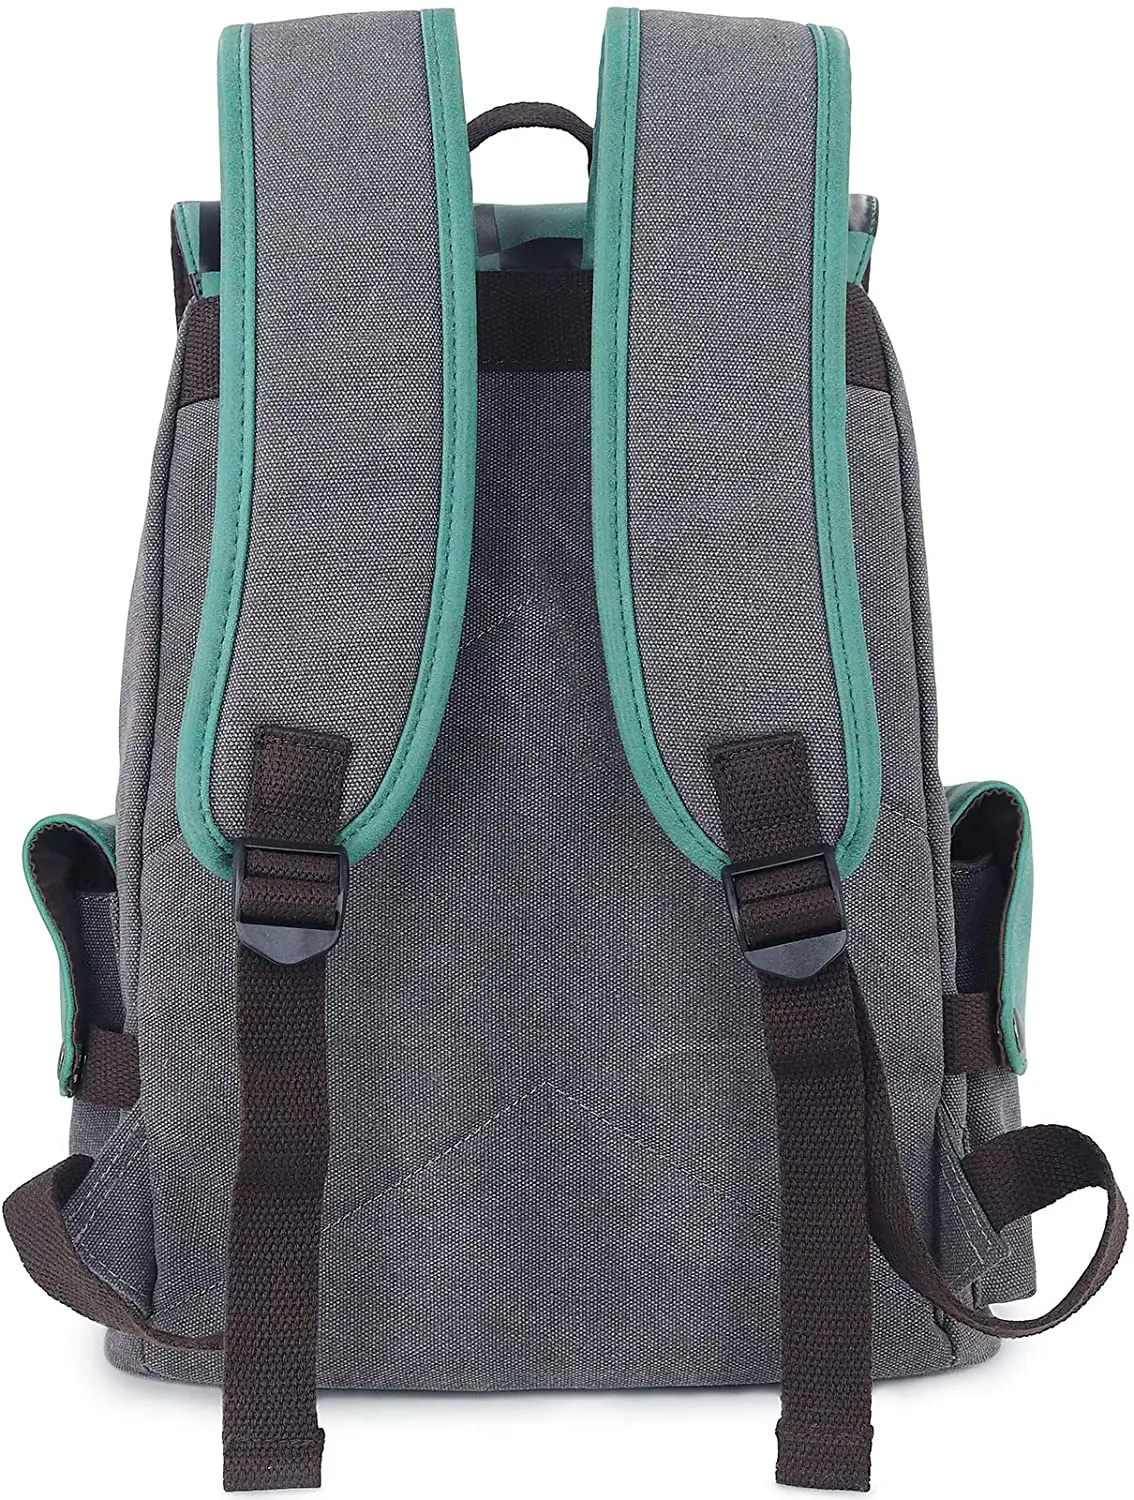 Anime Demon Slayer Backpack Canvas Schoolbag Printed Flap Backpack Laptops Back Pack 2 - Demon Slayer Plush